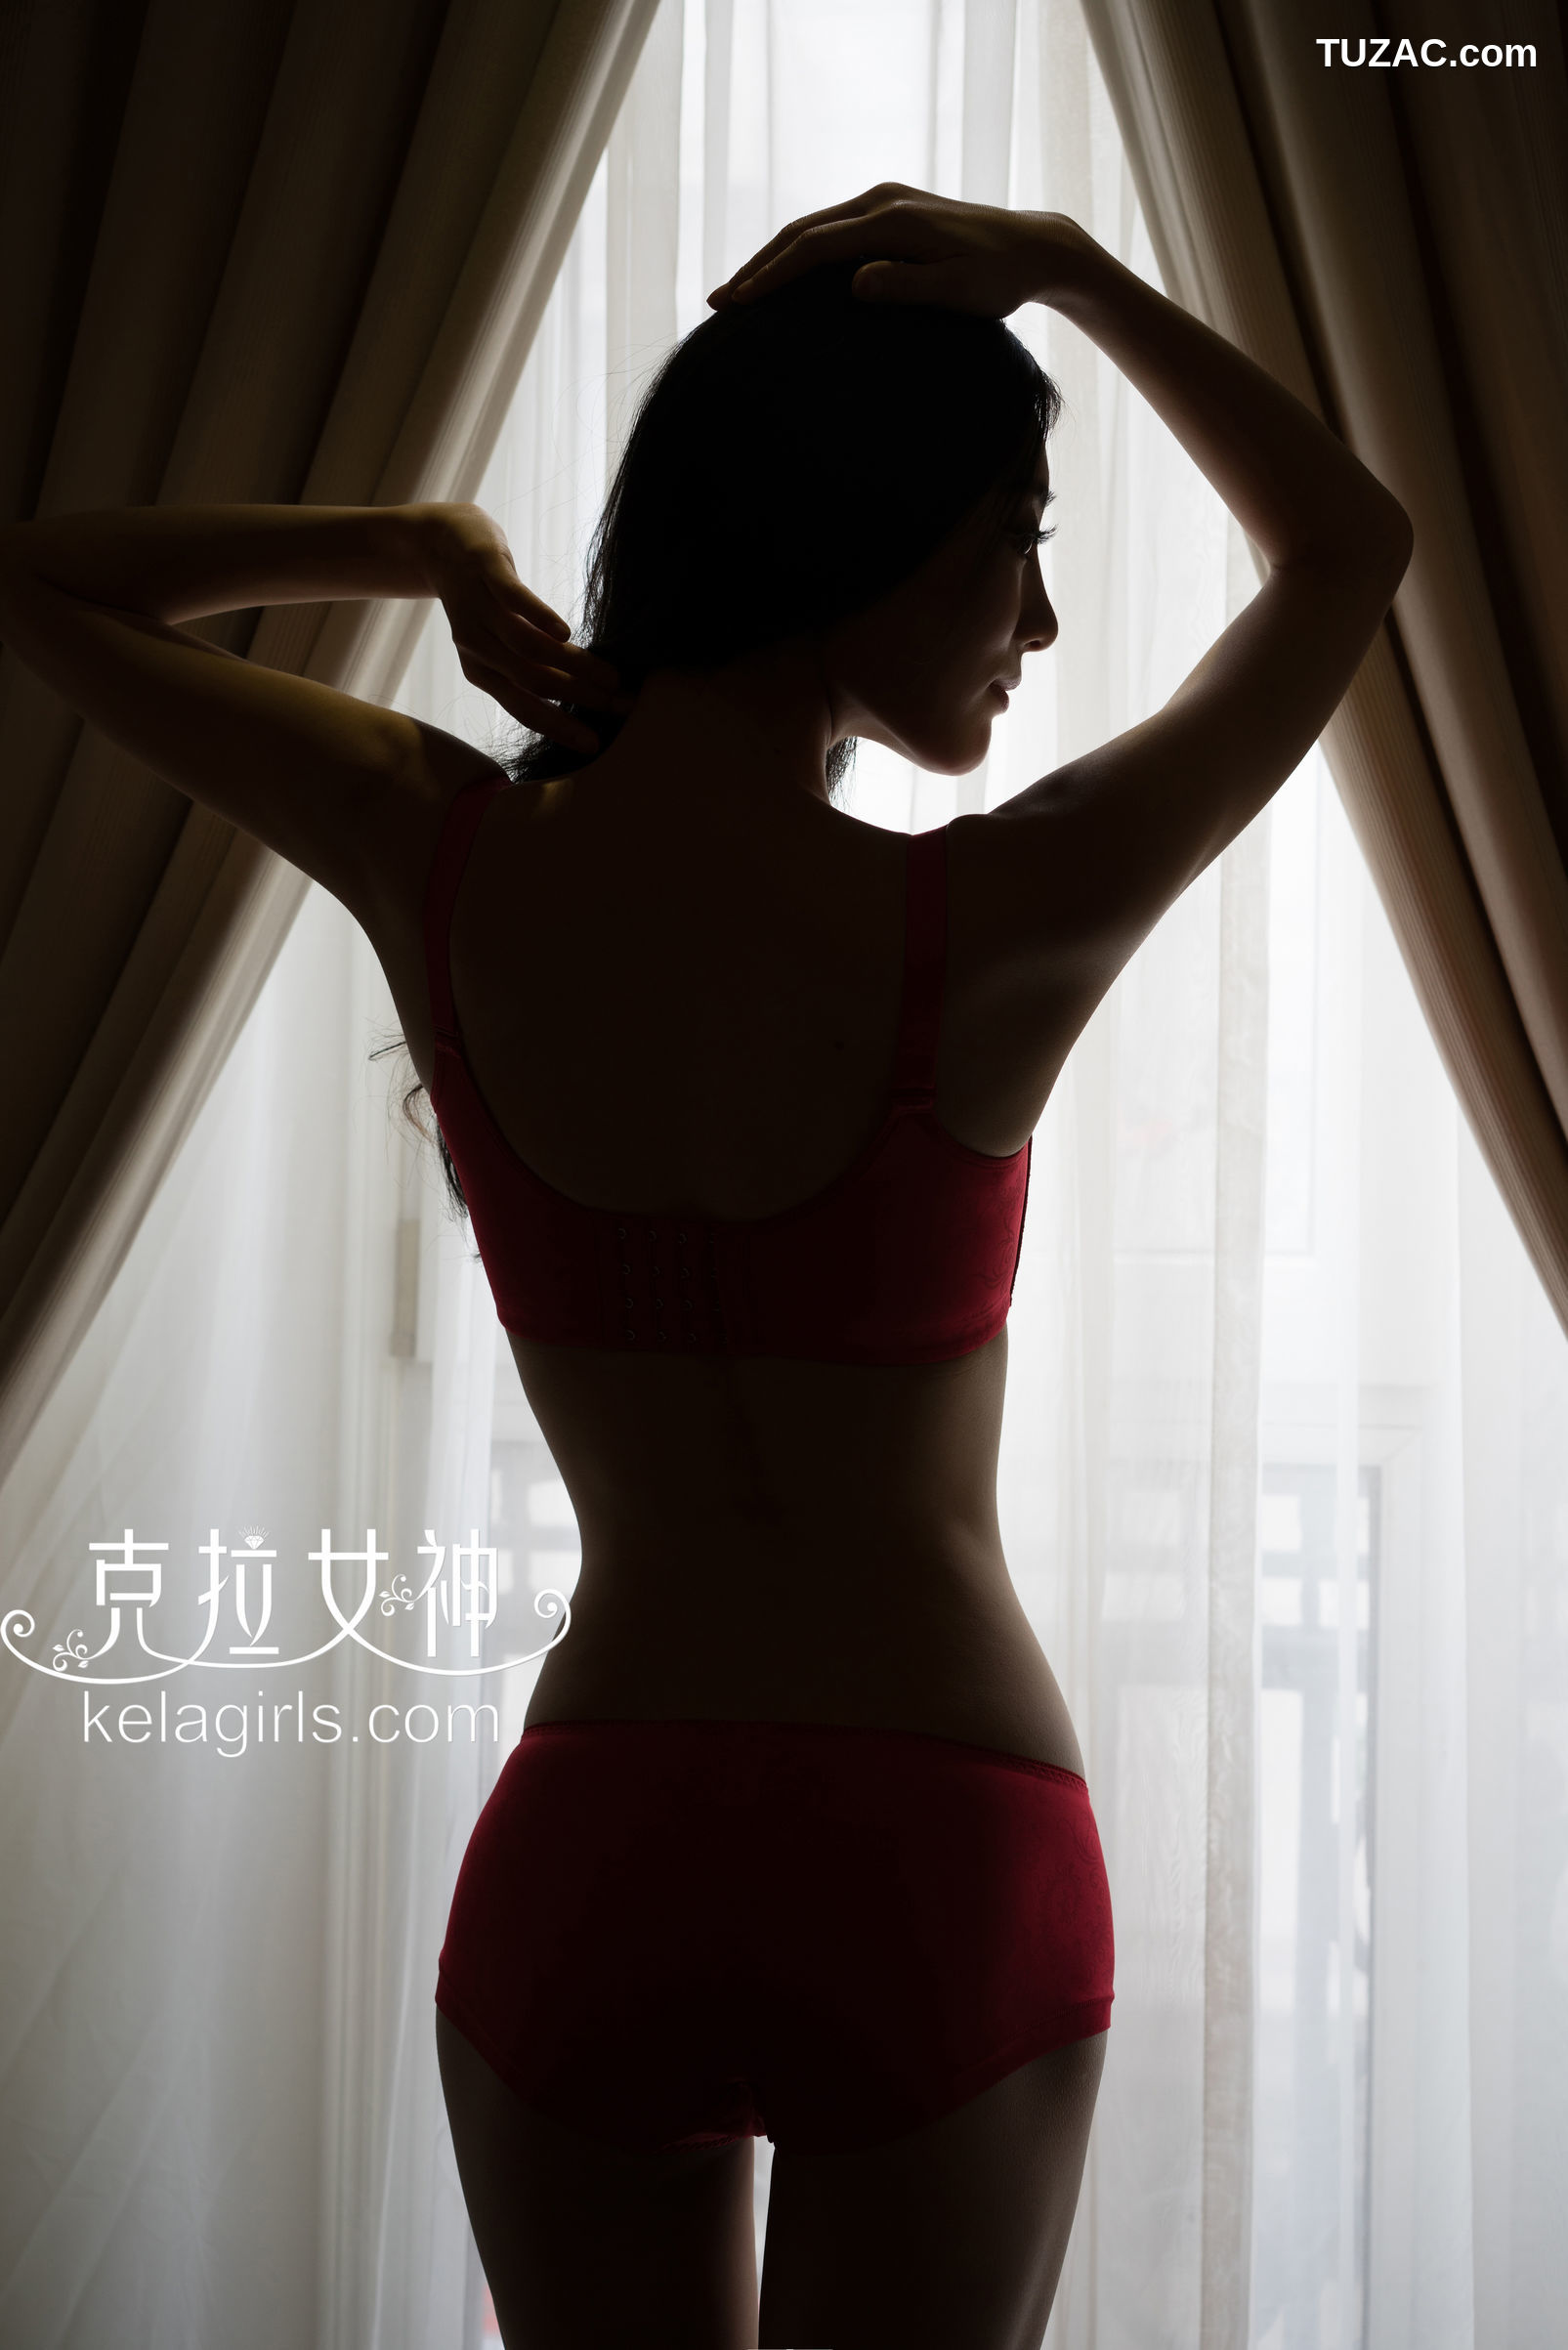 KelaGirls克拉女神-2018.02.11-颖儿-《私房日志》